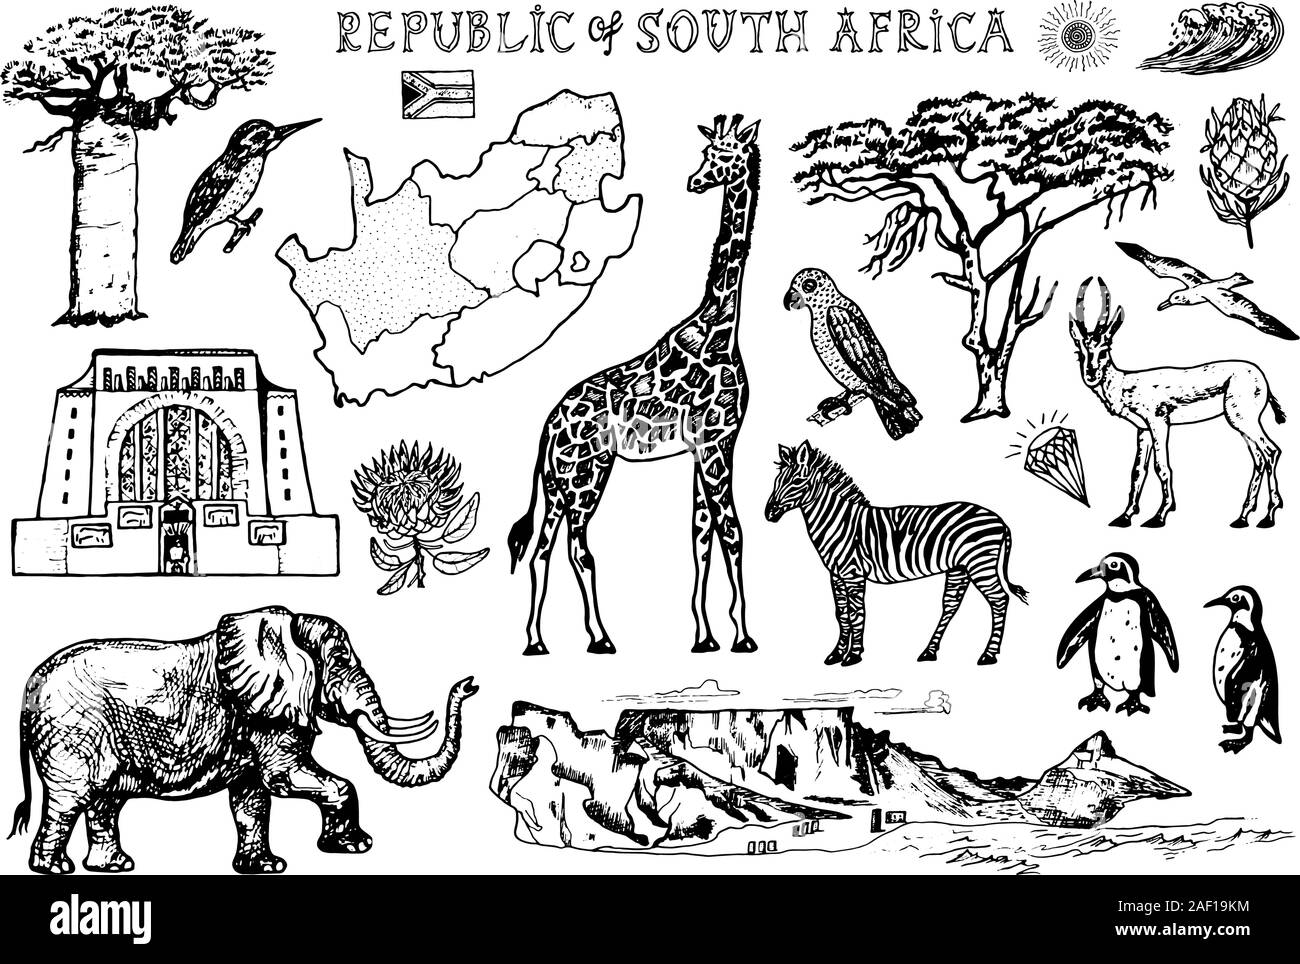 Afrika doodle Vintage eingestellt. Wilde Tiere in Safari auf weißem Hintergrund. Giraffen und Zebras, Karte und Vögel. Hand gezeichnete Skizze. Stock Vektor